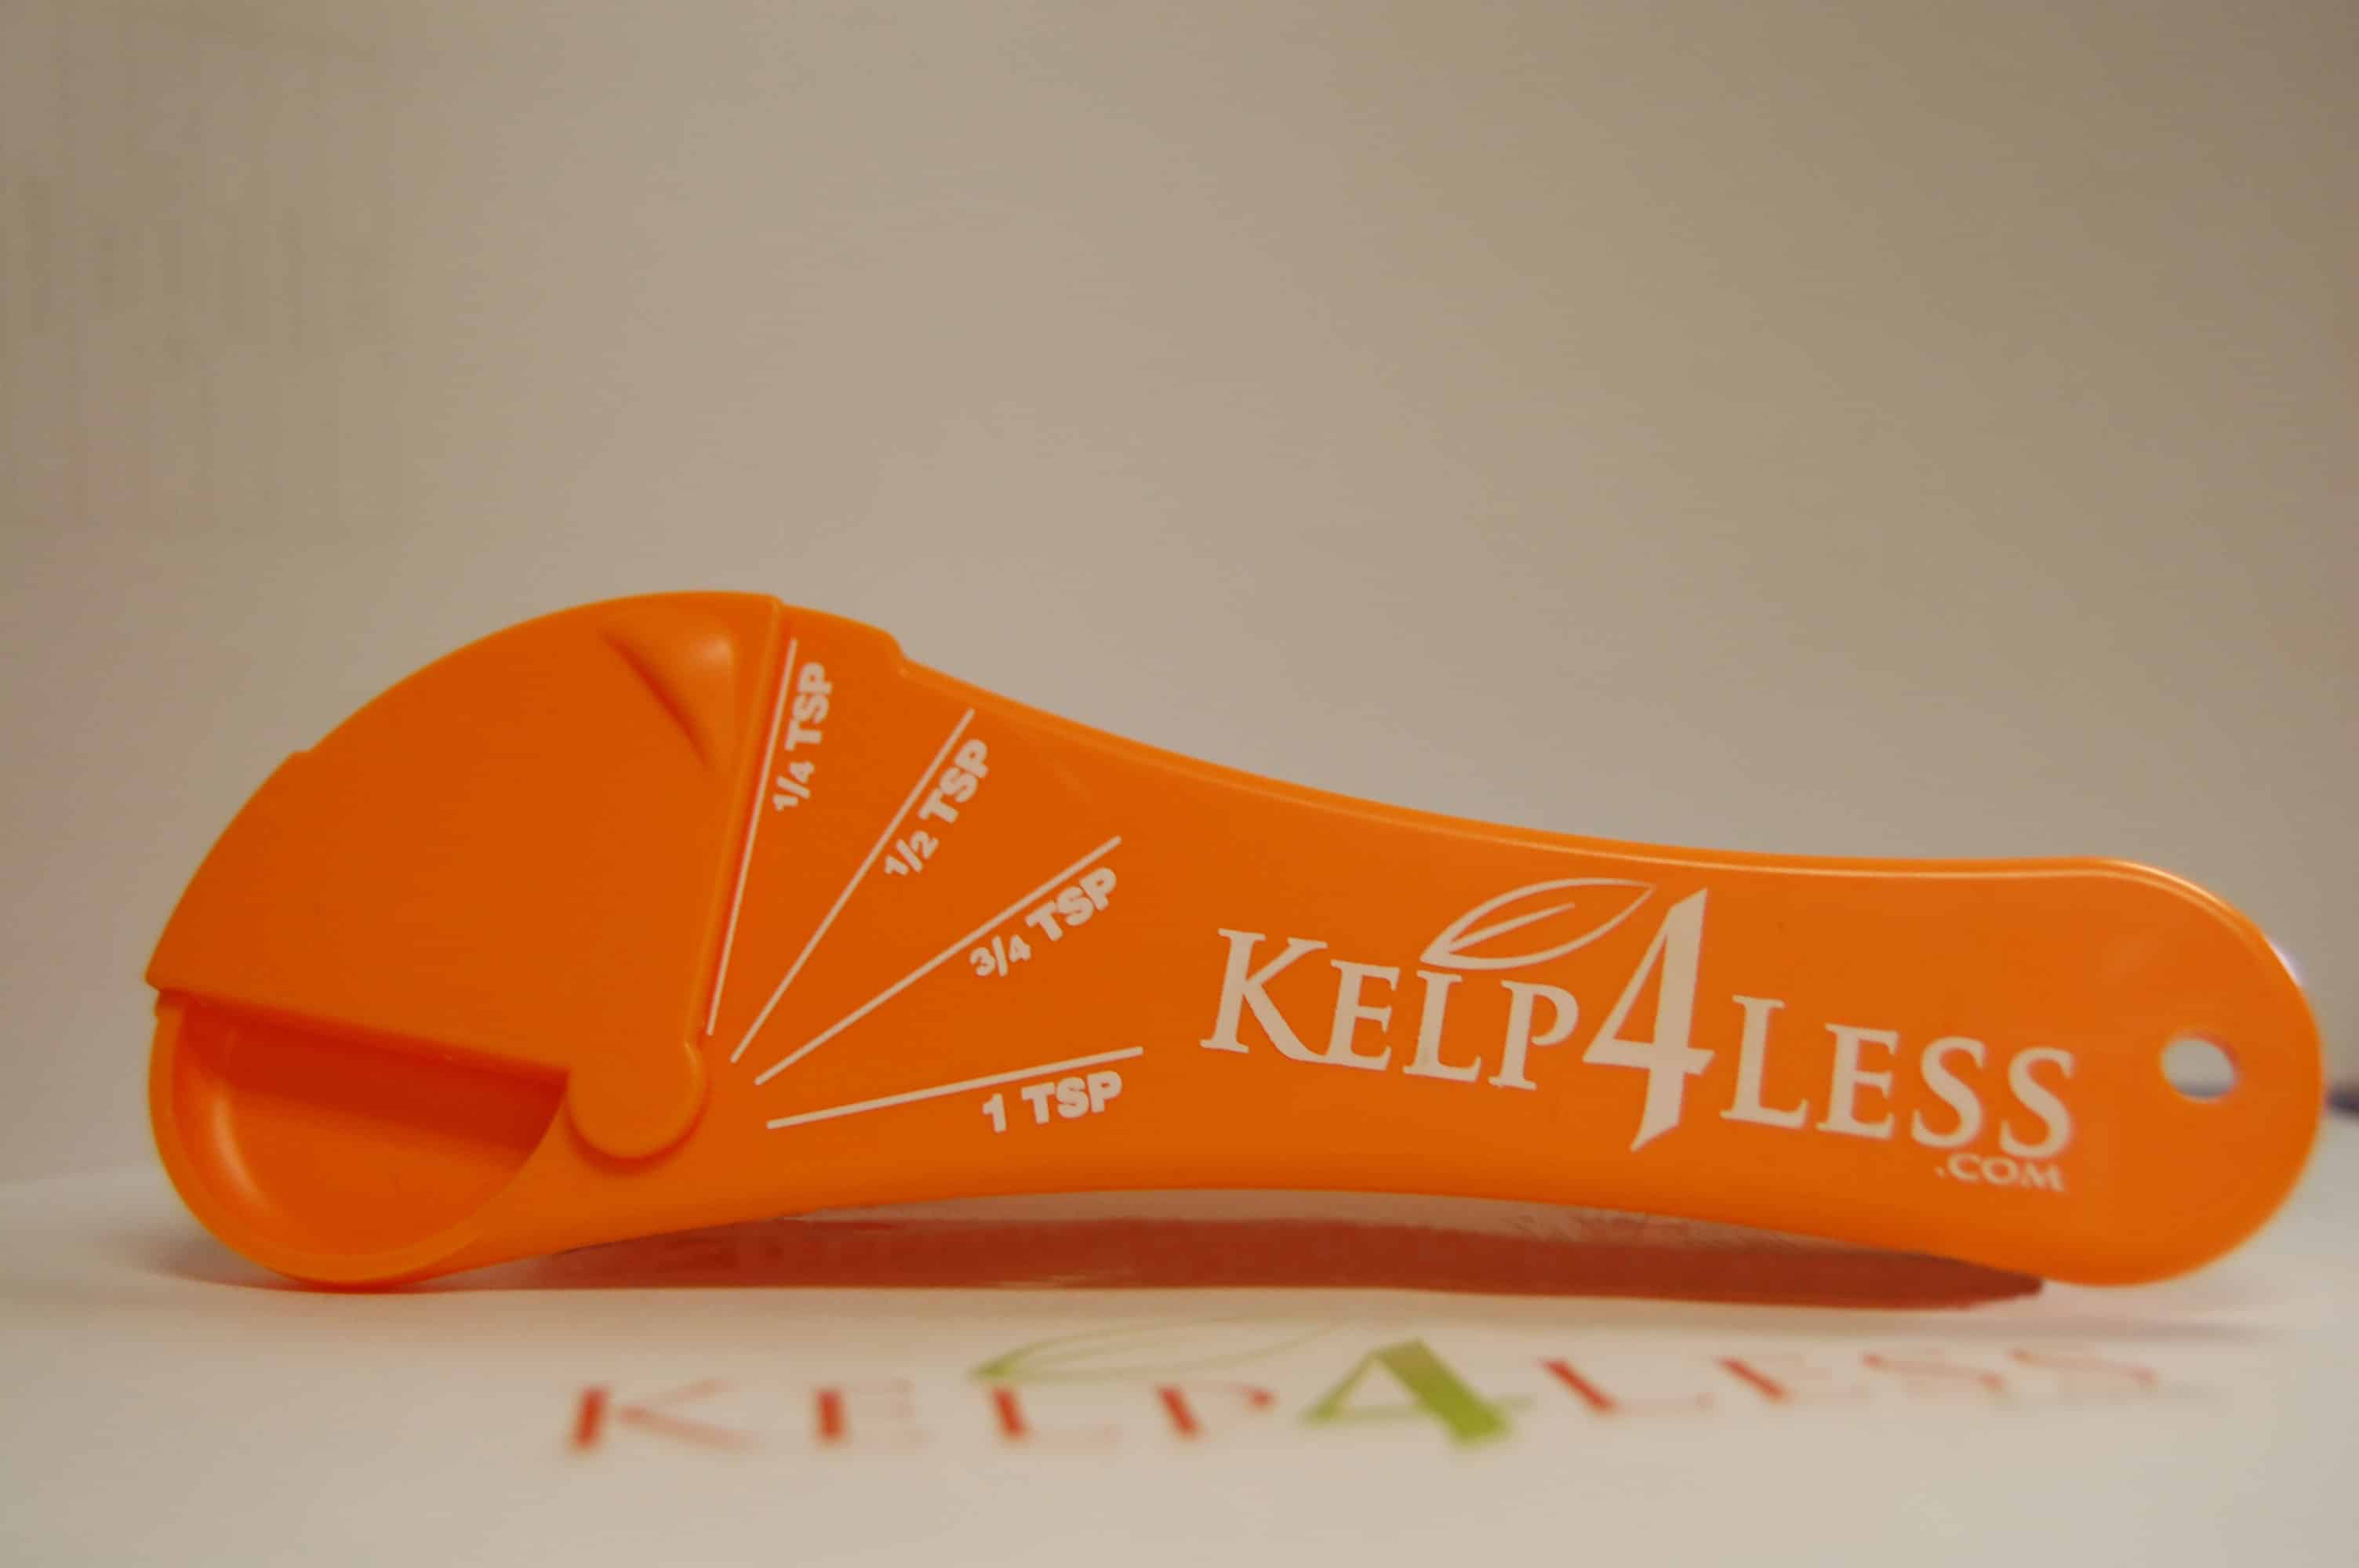 Teaspoon (Adjustable) – Kelp4less